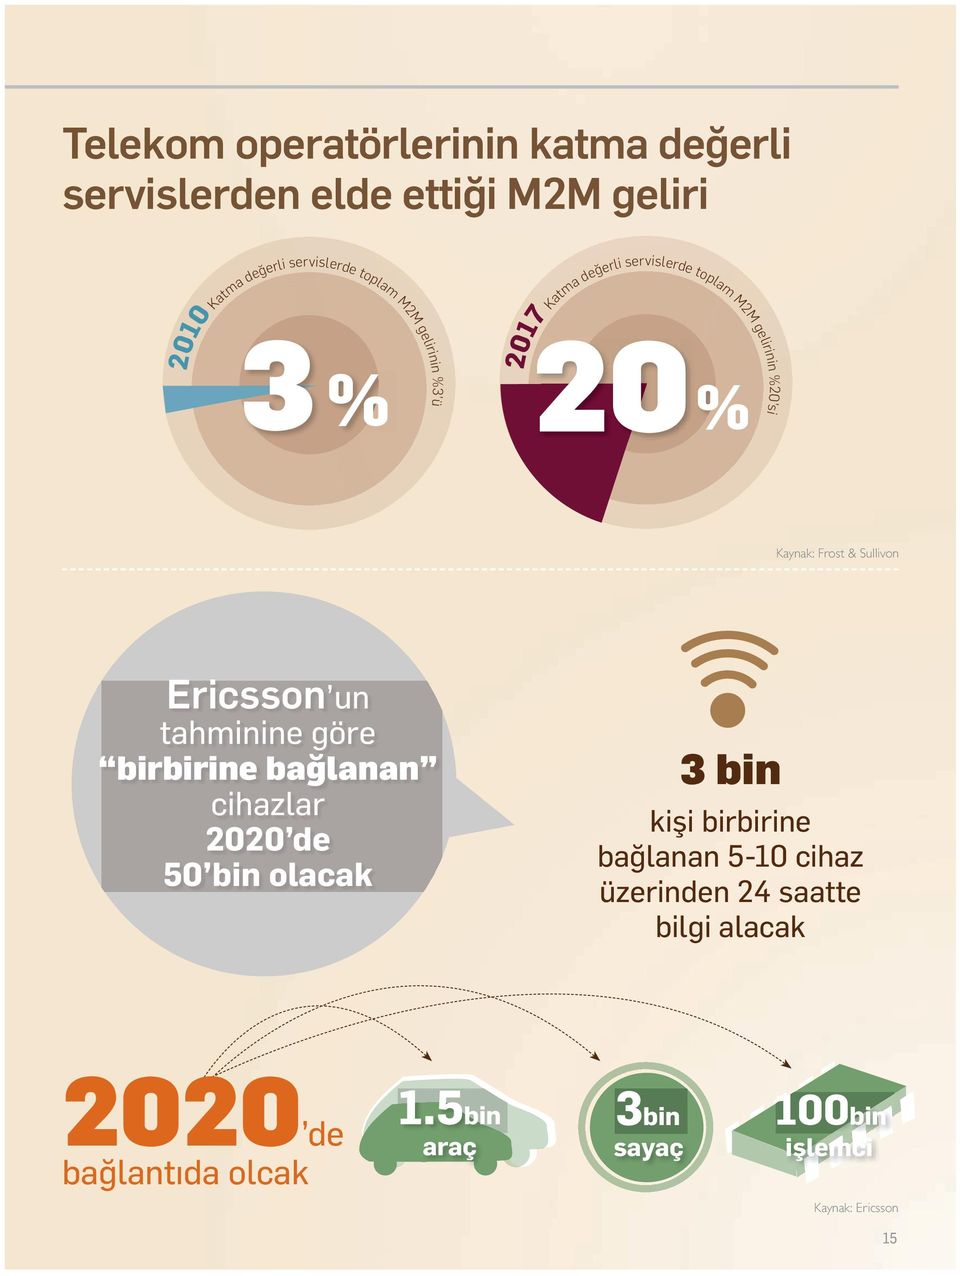 Ericsson un tahminine göre birbirine bağlanan cihazlar 2020 de 50 bin olacak 3 bin kişi birbirine bağlanan 5-10